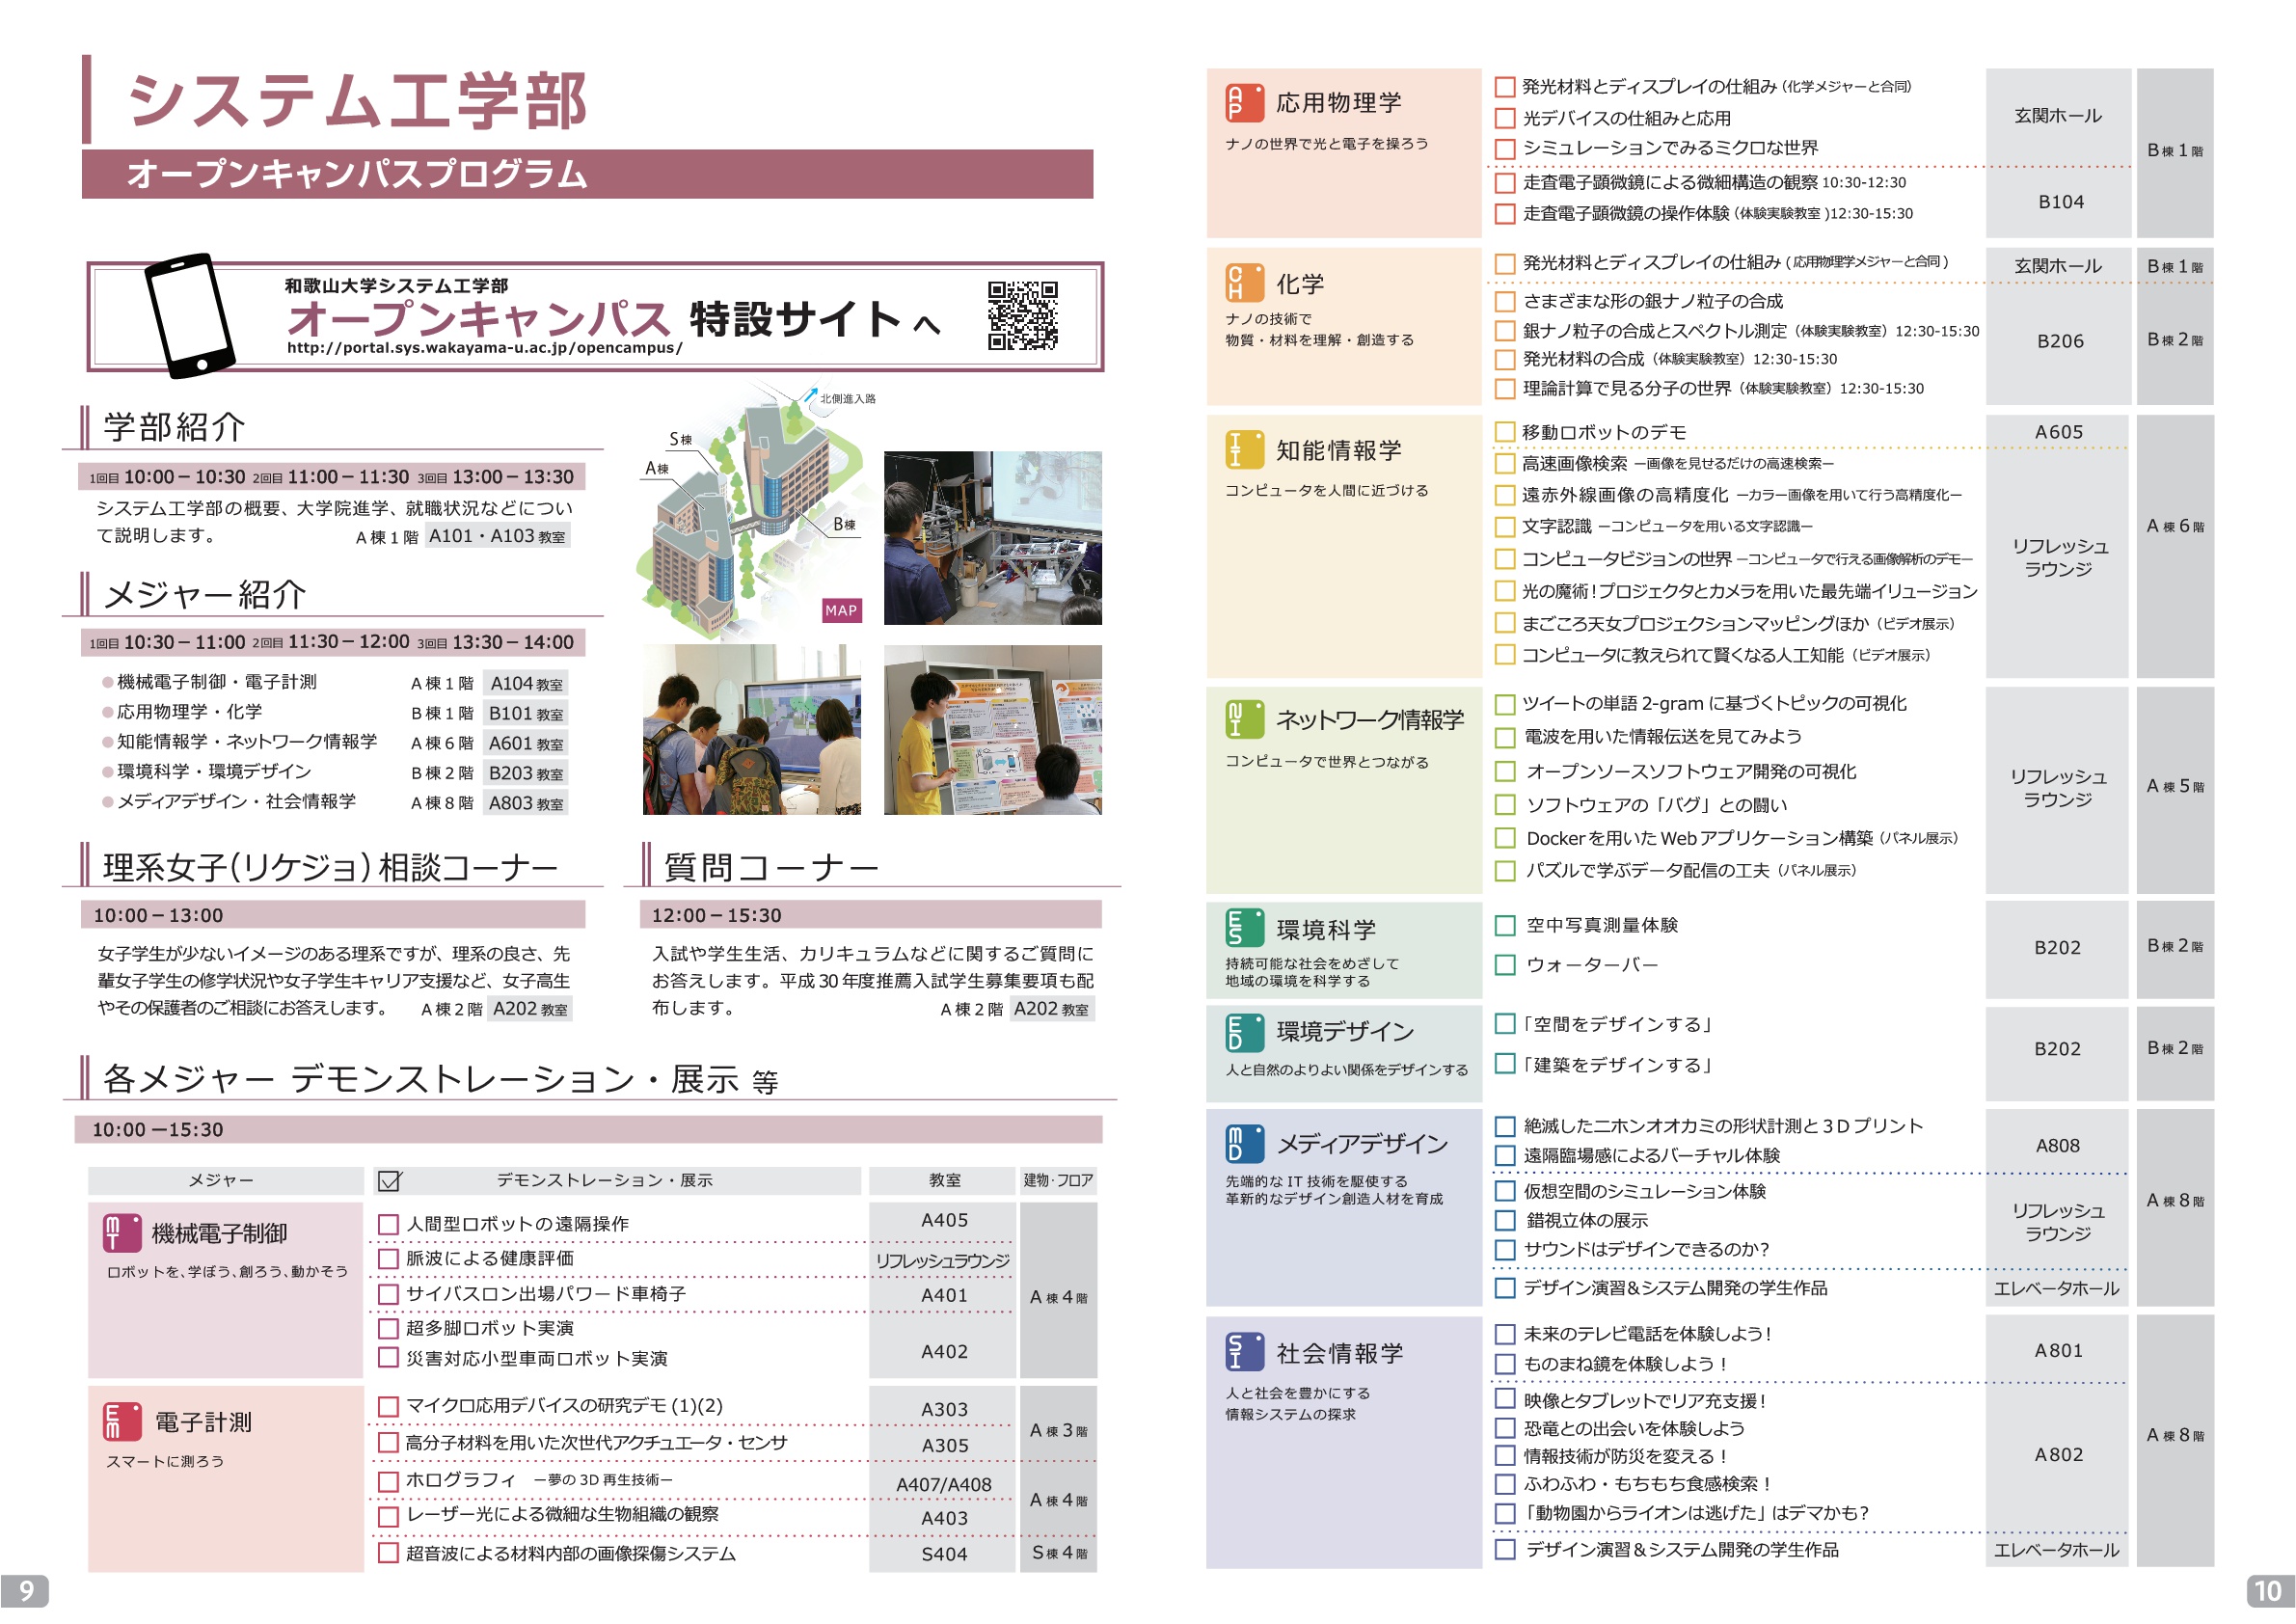 http://www.wakayama-u.ac.jp/blog/wadai_scope/files/ws-admin/%E3%82%B7%E3%82%B9%E3%82%B3%E3%82%A6%E8%A6%8B%E9%96%8B%E3%81%8D.jpg